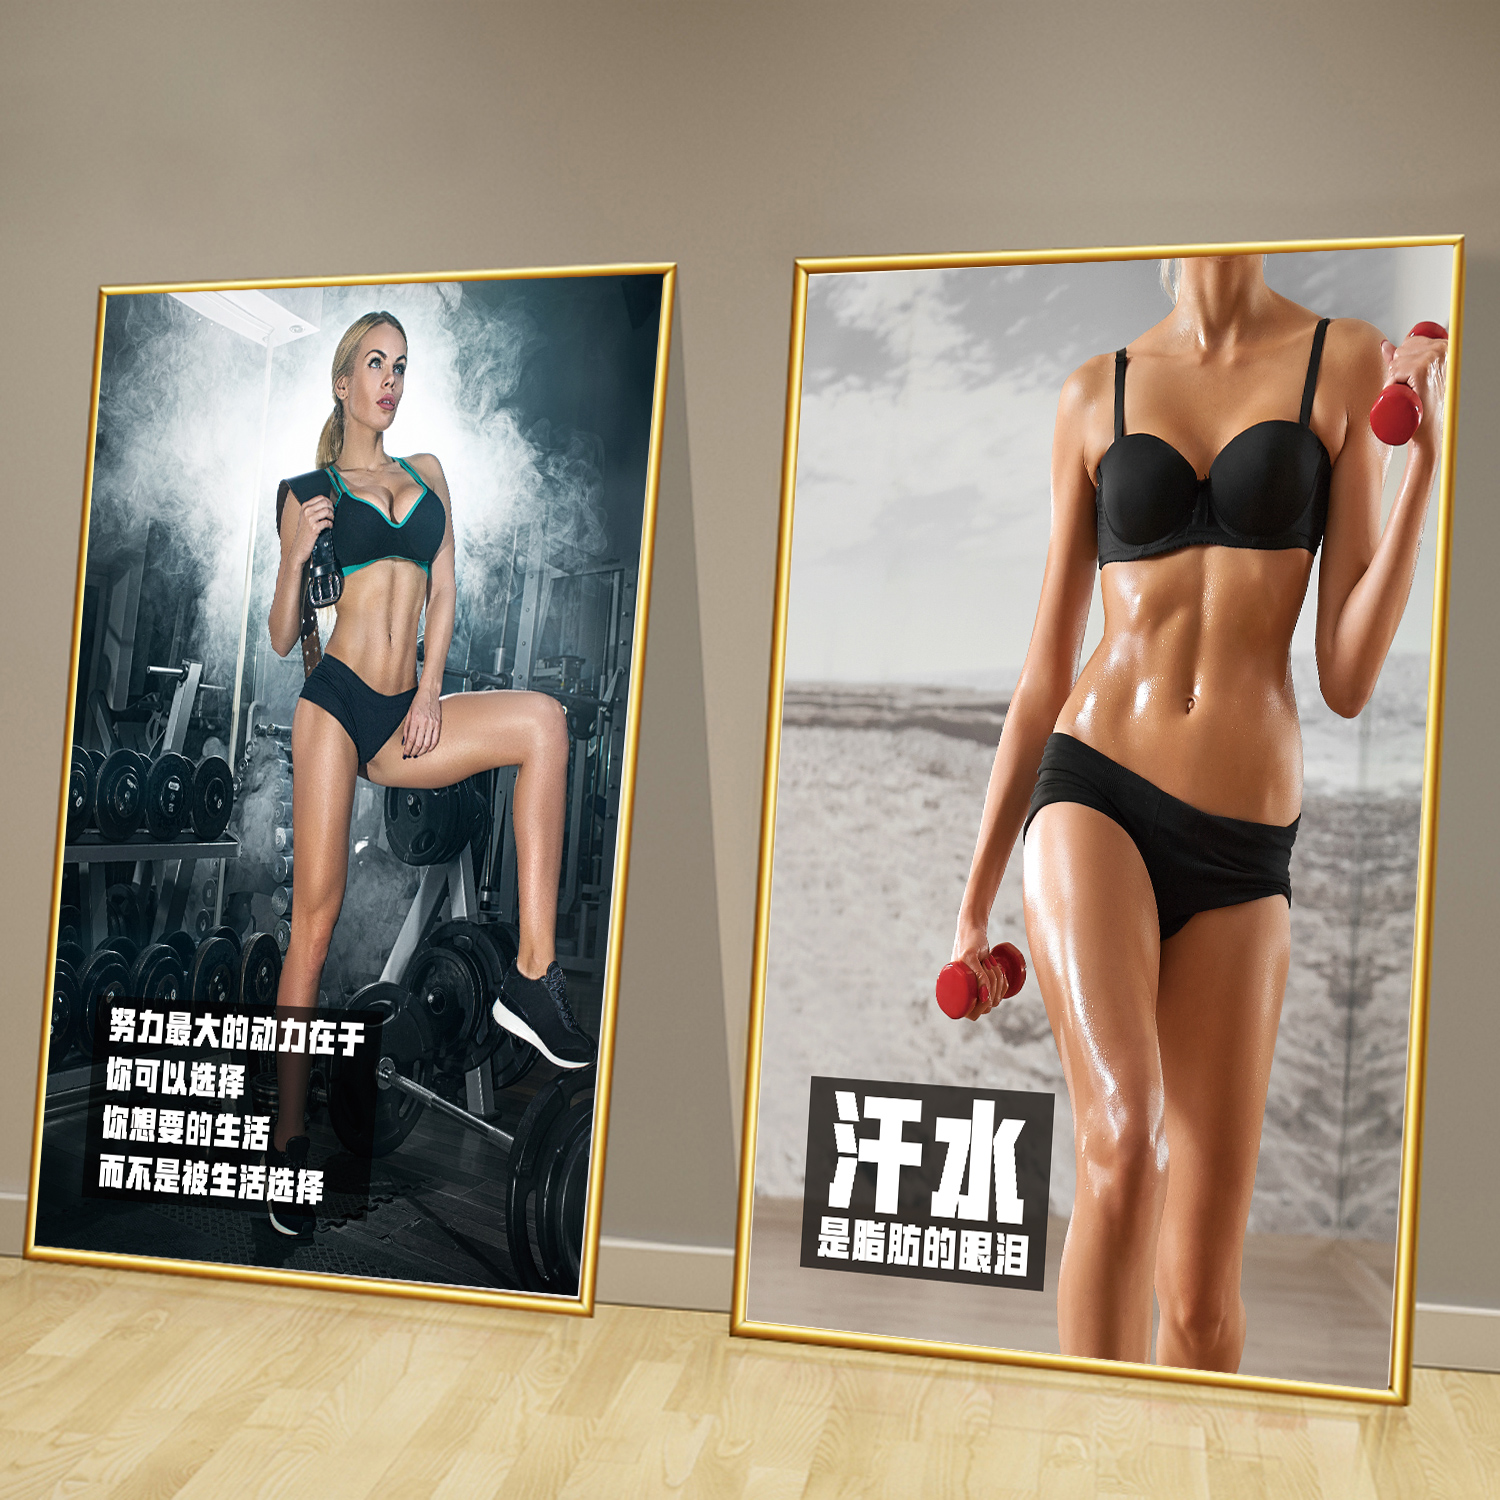 健身房励志海报装饰画墙贴纸KT板健美马甲线男女肌肉图片宿舍壁纸